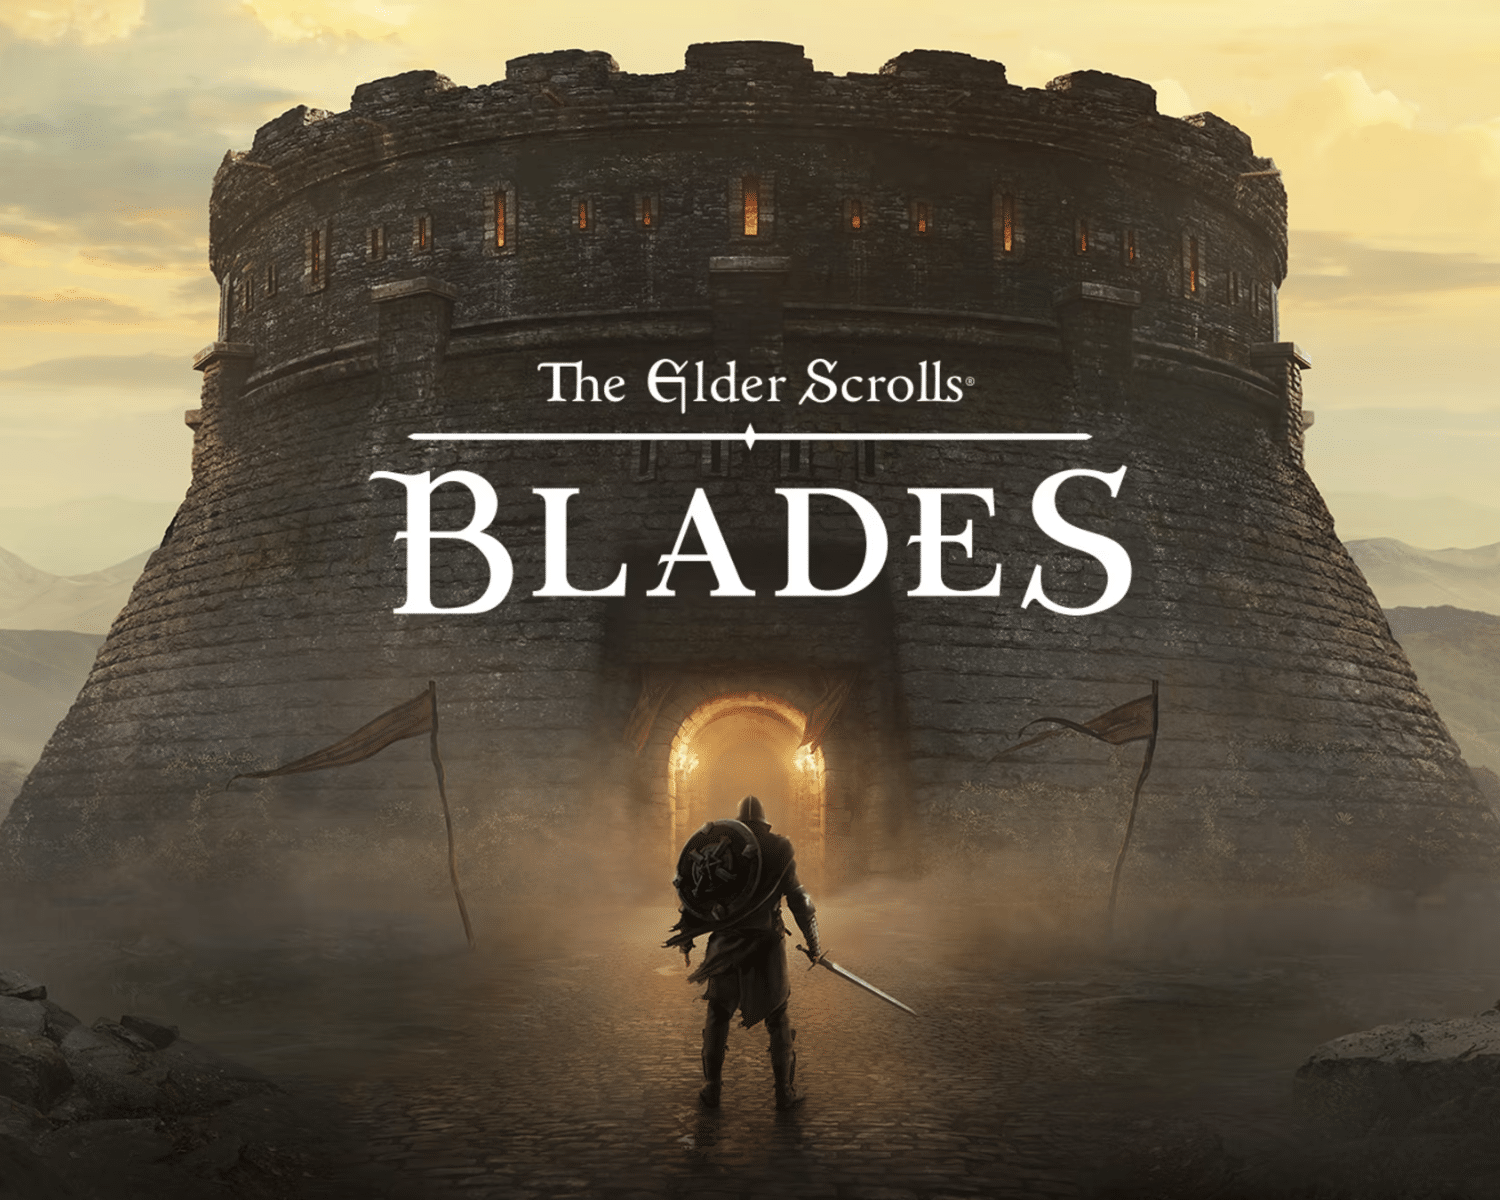 Couverture du jeu vidéo The Elders Scrolls de Bethesda